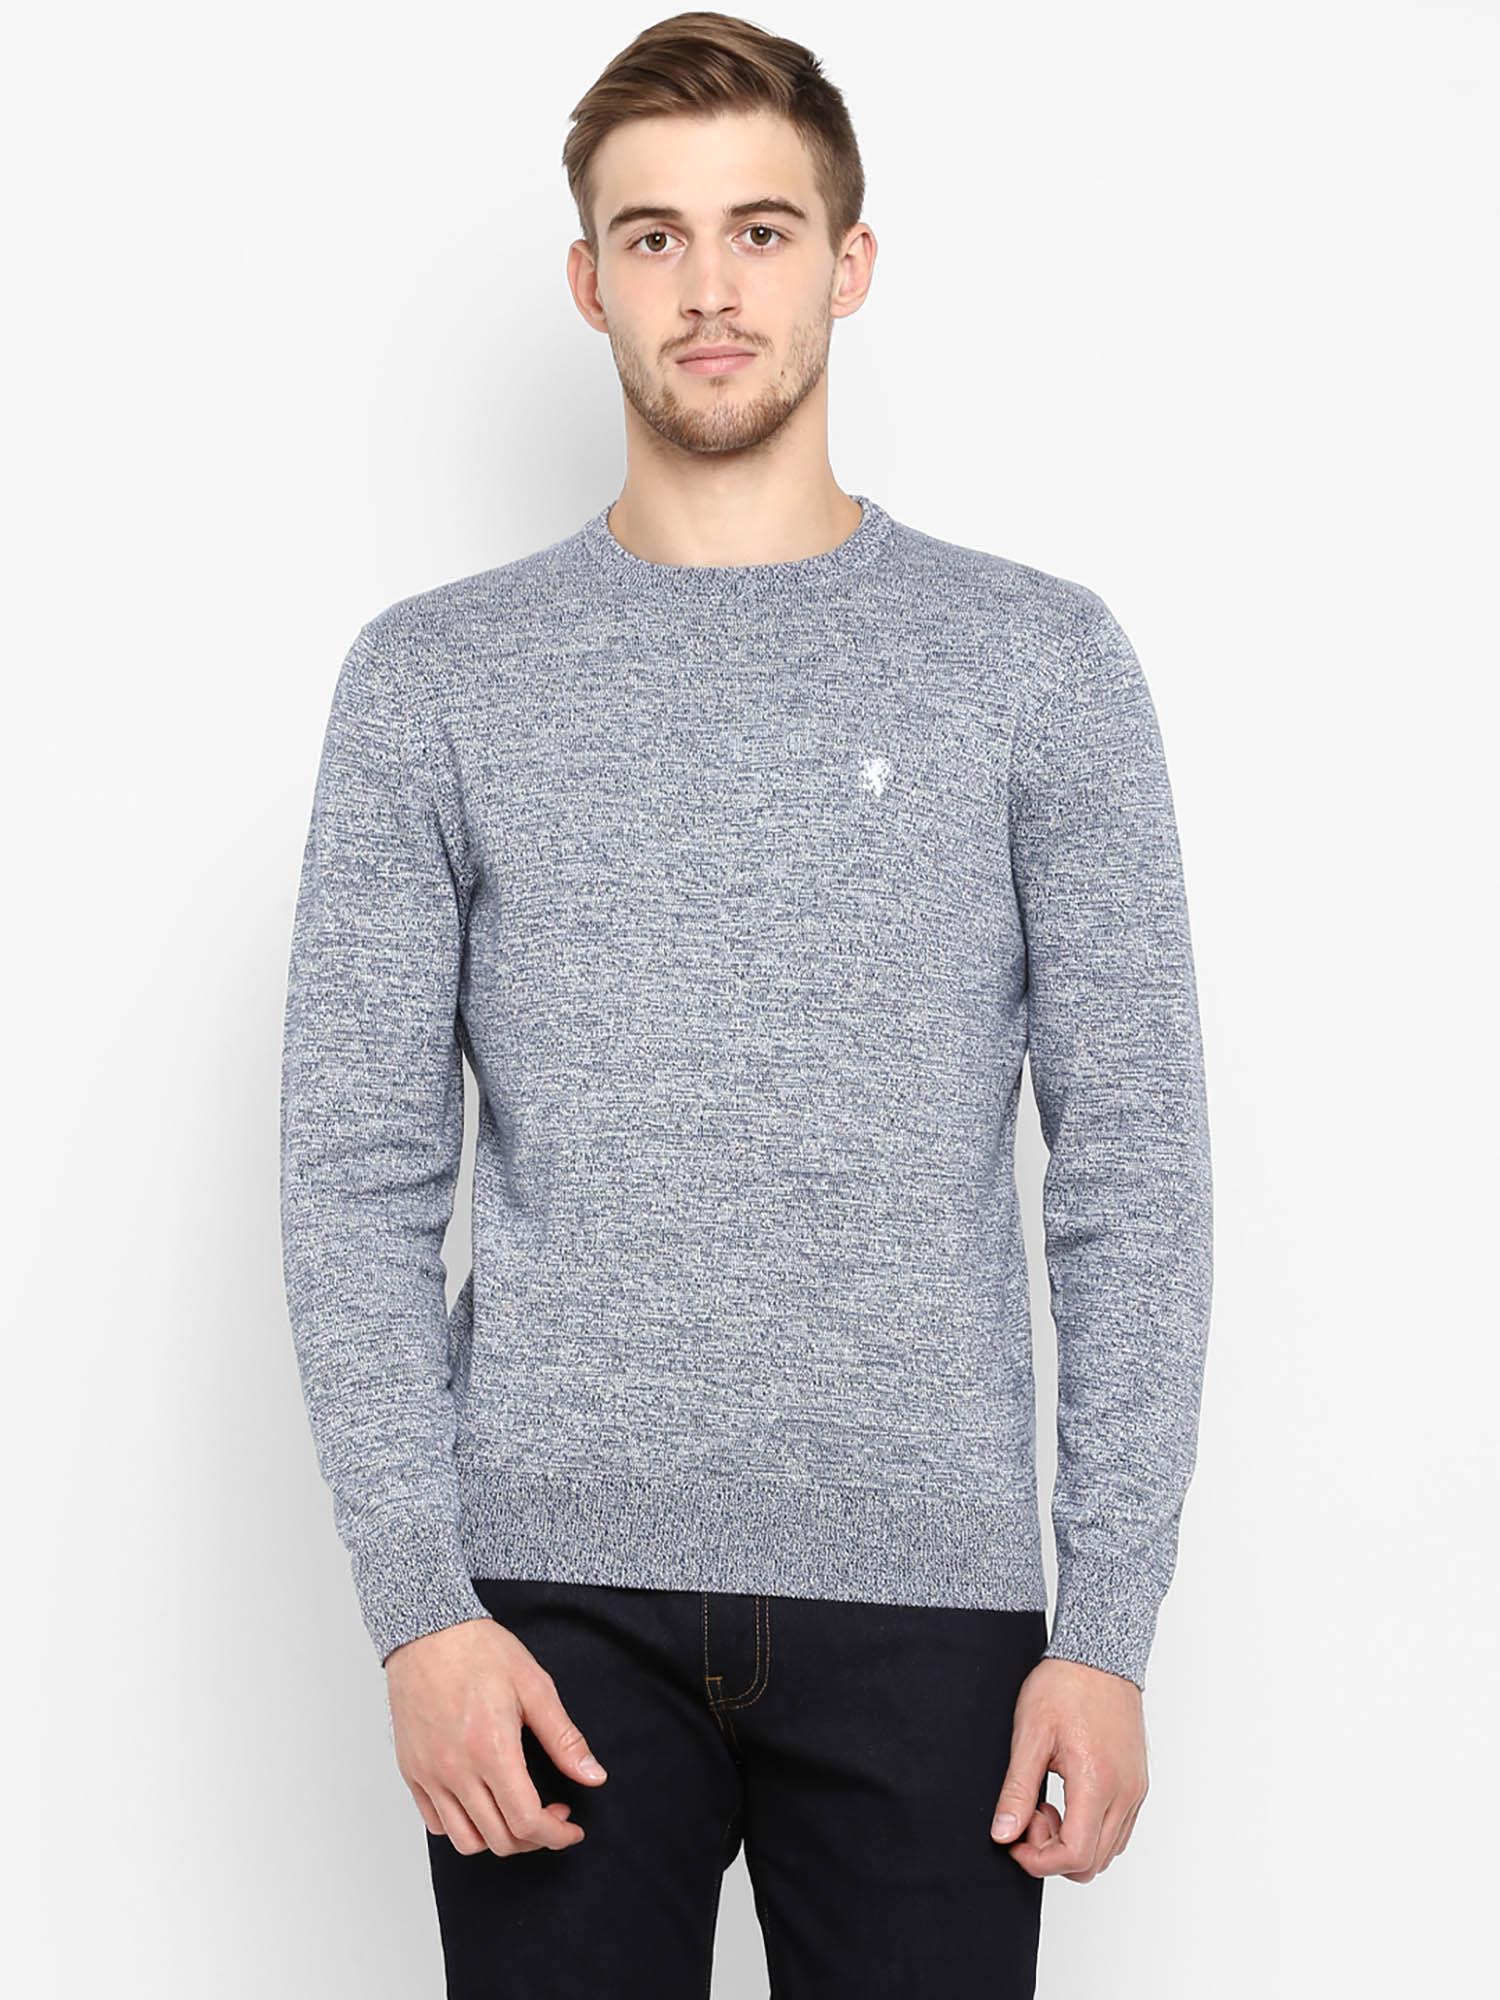 grey crew neck sweater